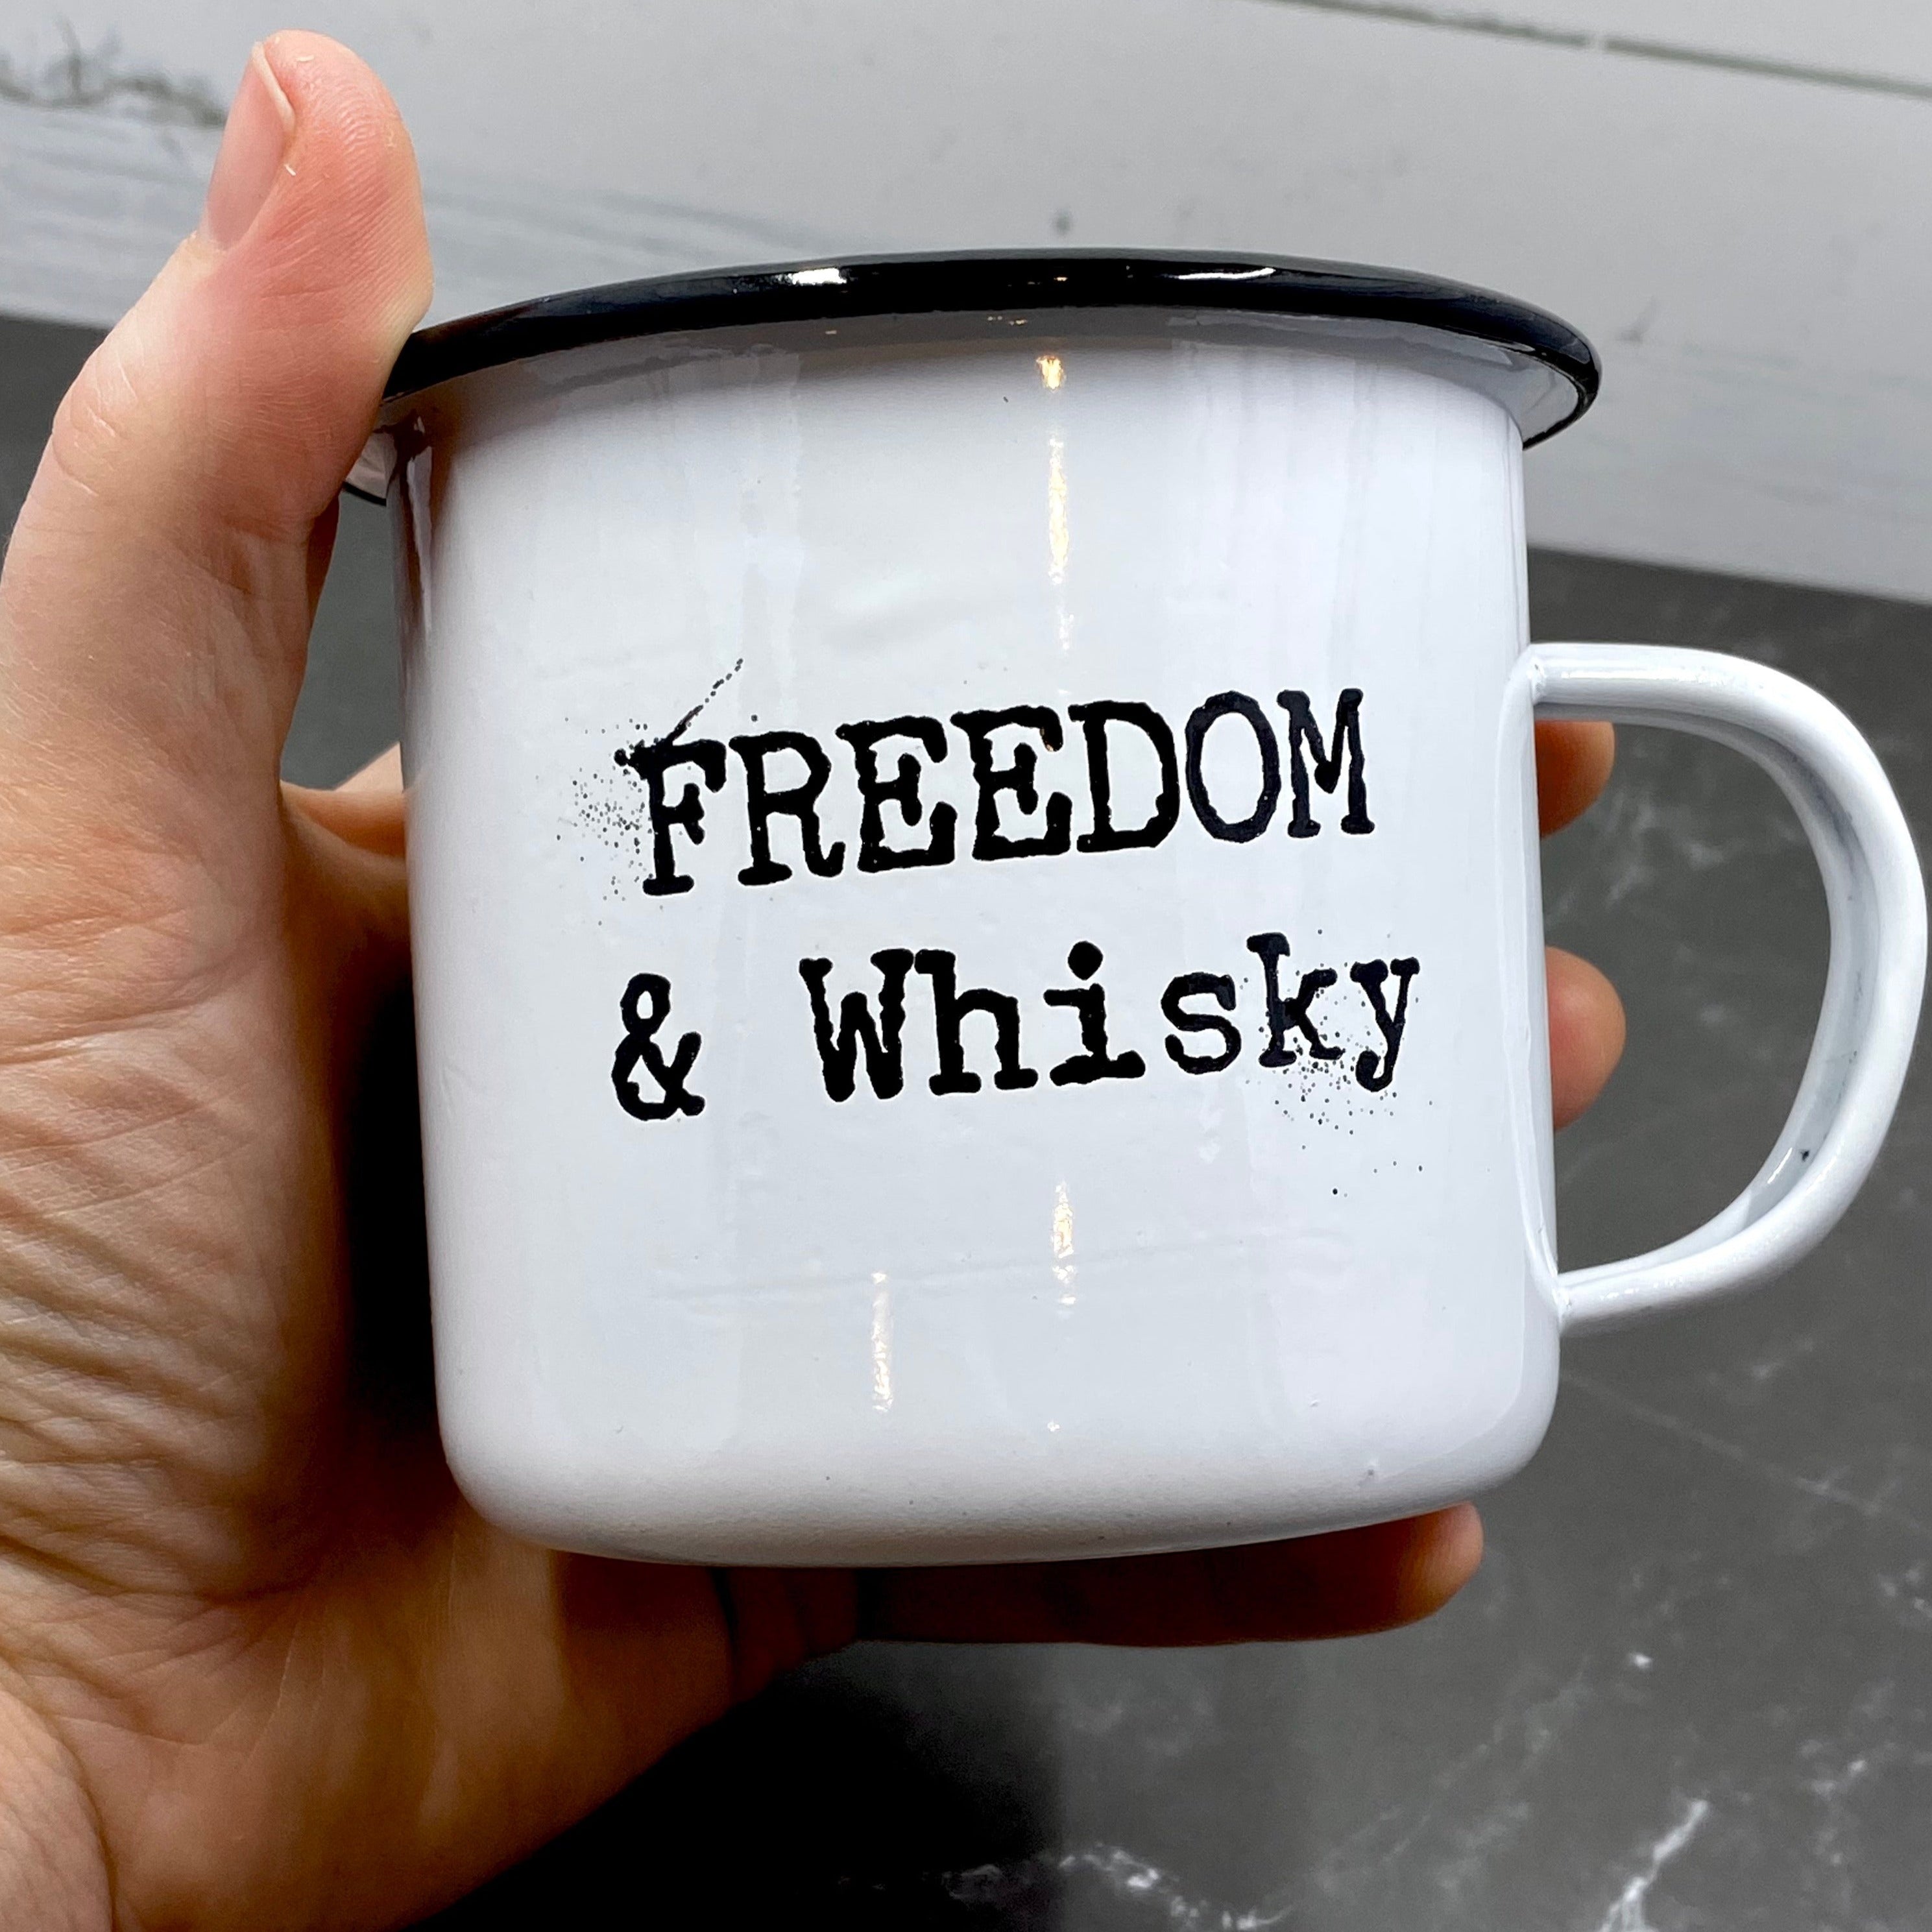 Whiskey - Coffee Mug